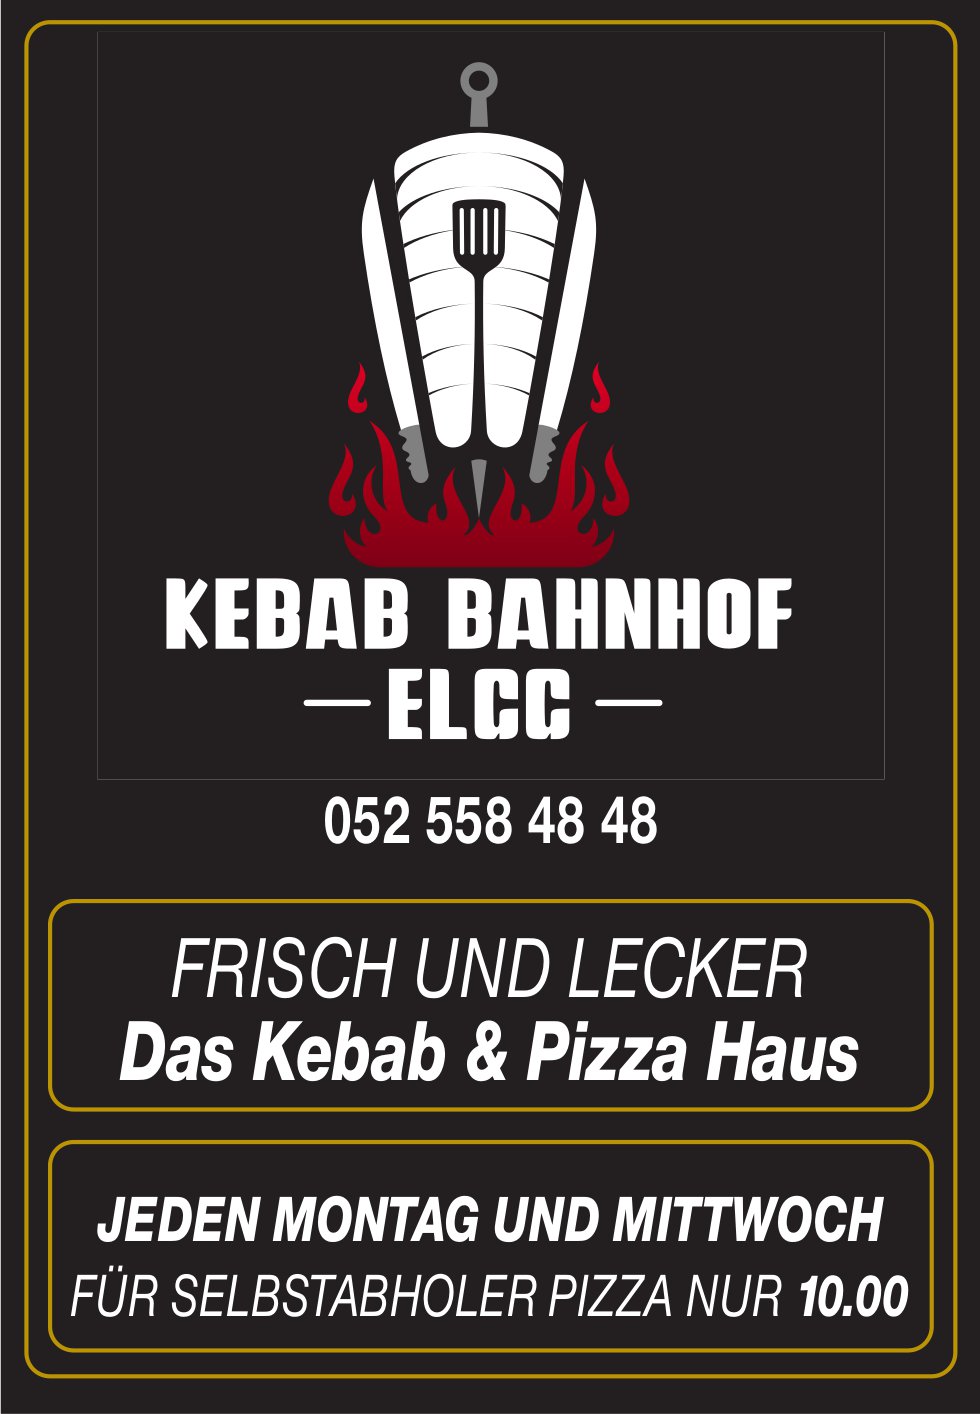 Kebab Bahnhof, Elgg - Das Kebab & Pizza Haus